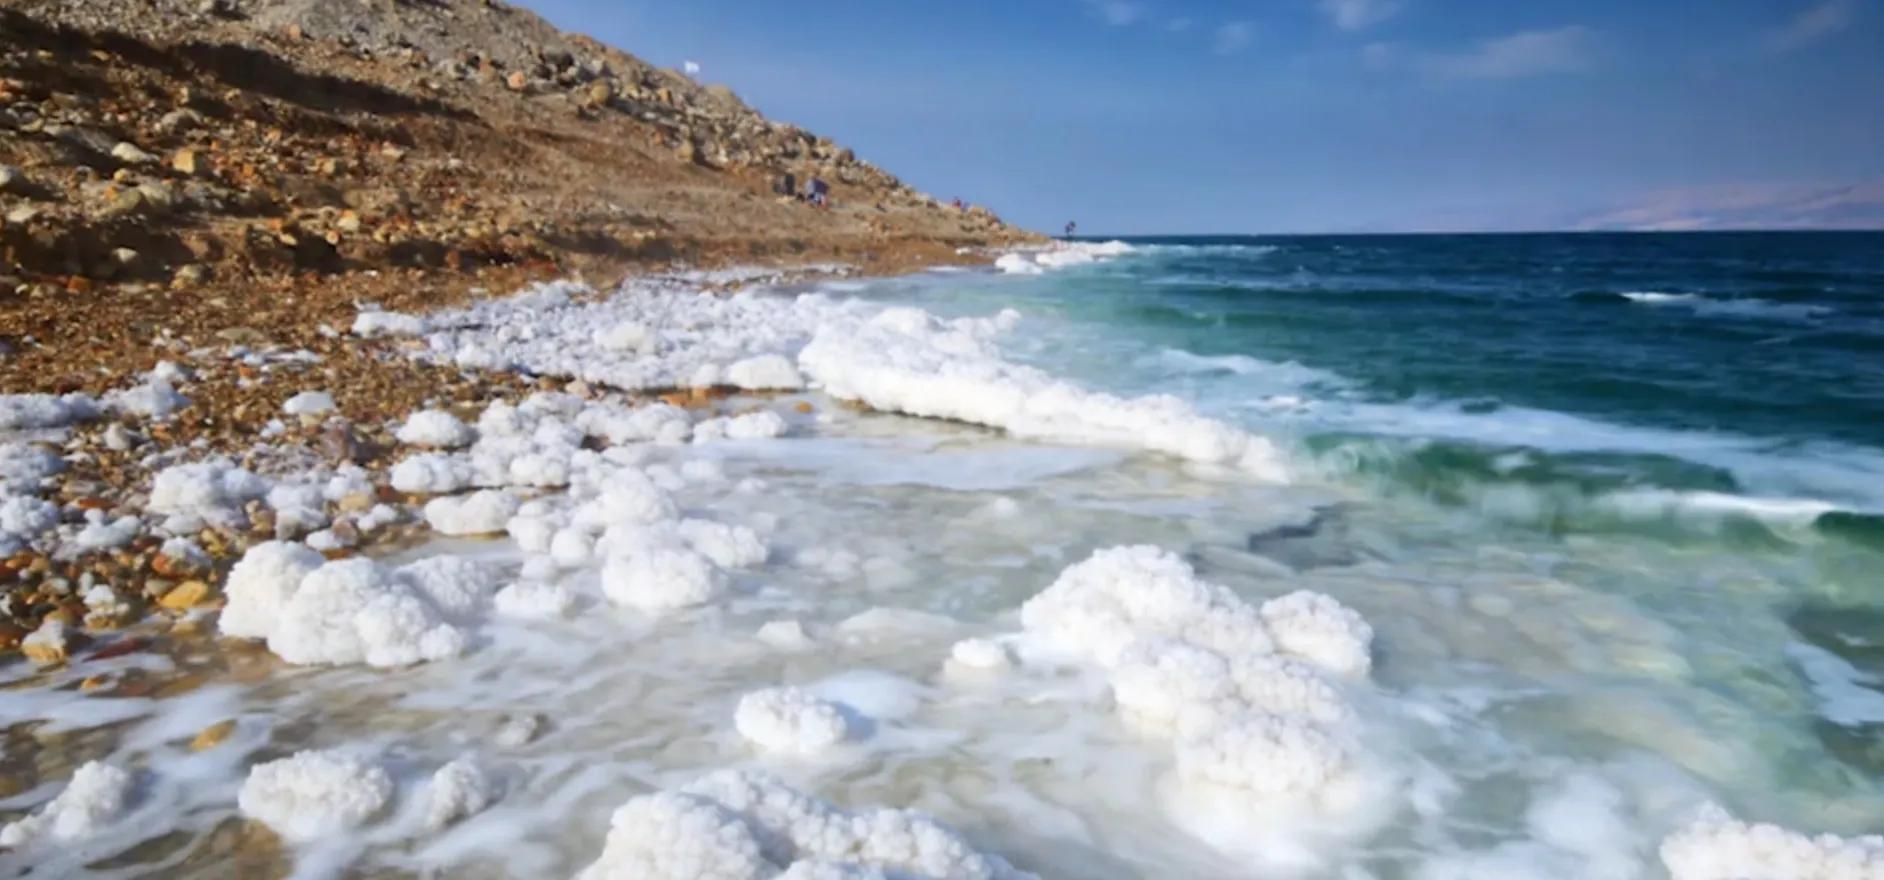 死海在哪个国家 死海位置位于哪里